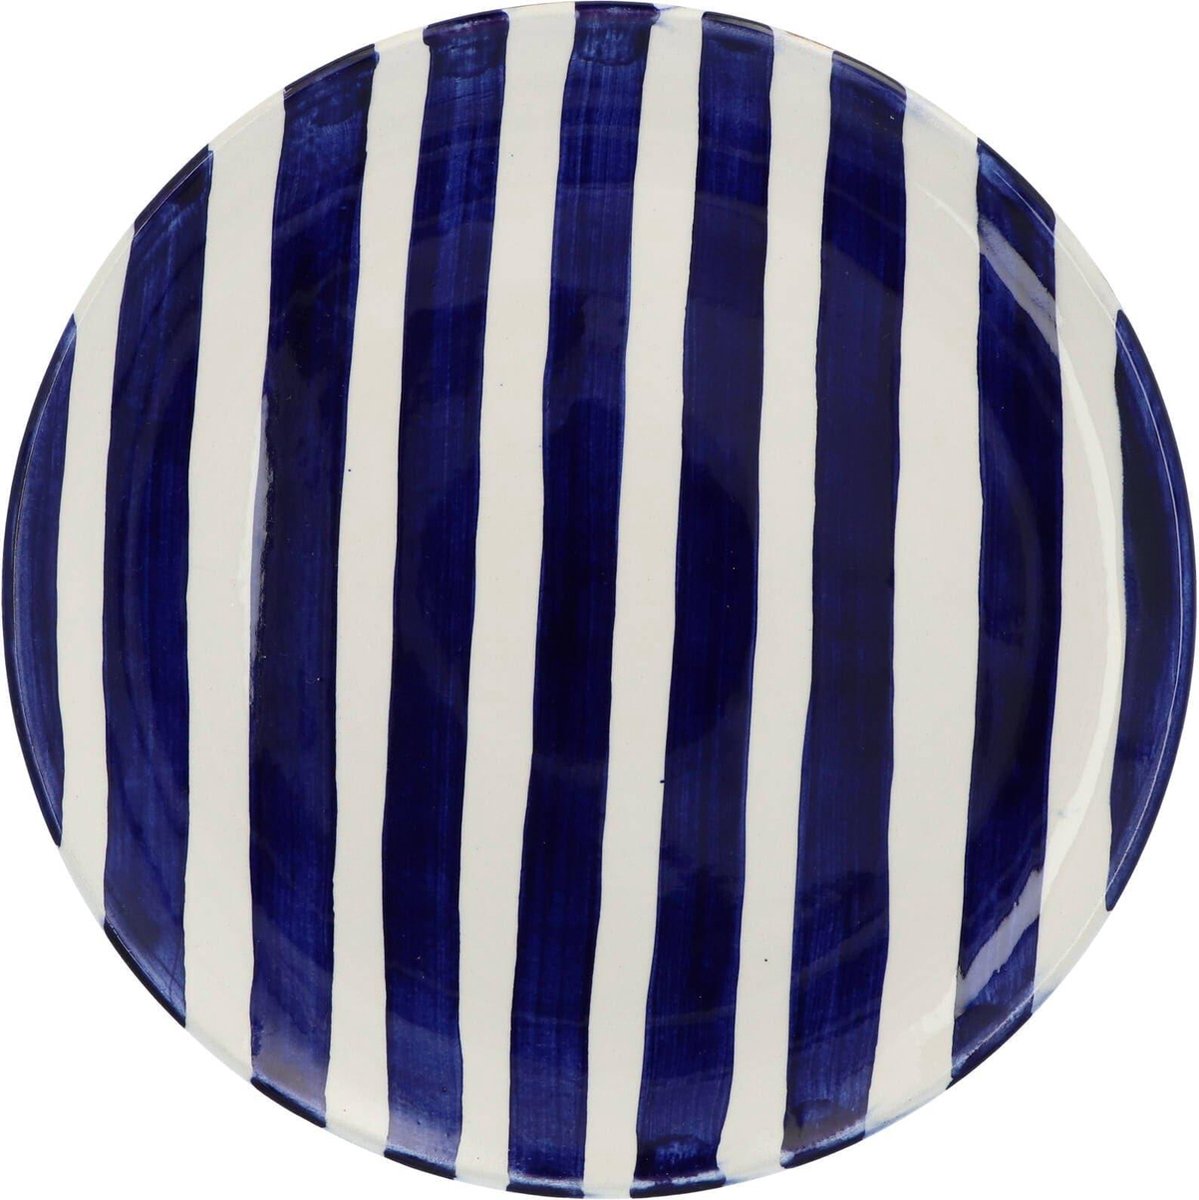 Casa Cubista - Ontbijtbord met streeppatroon blauw 23cm - Kleine borden